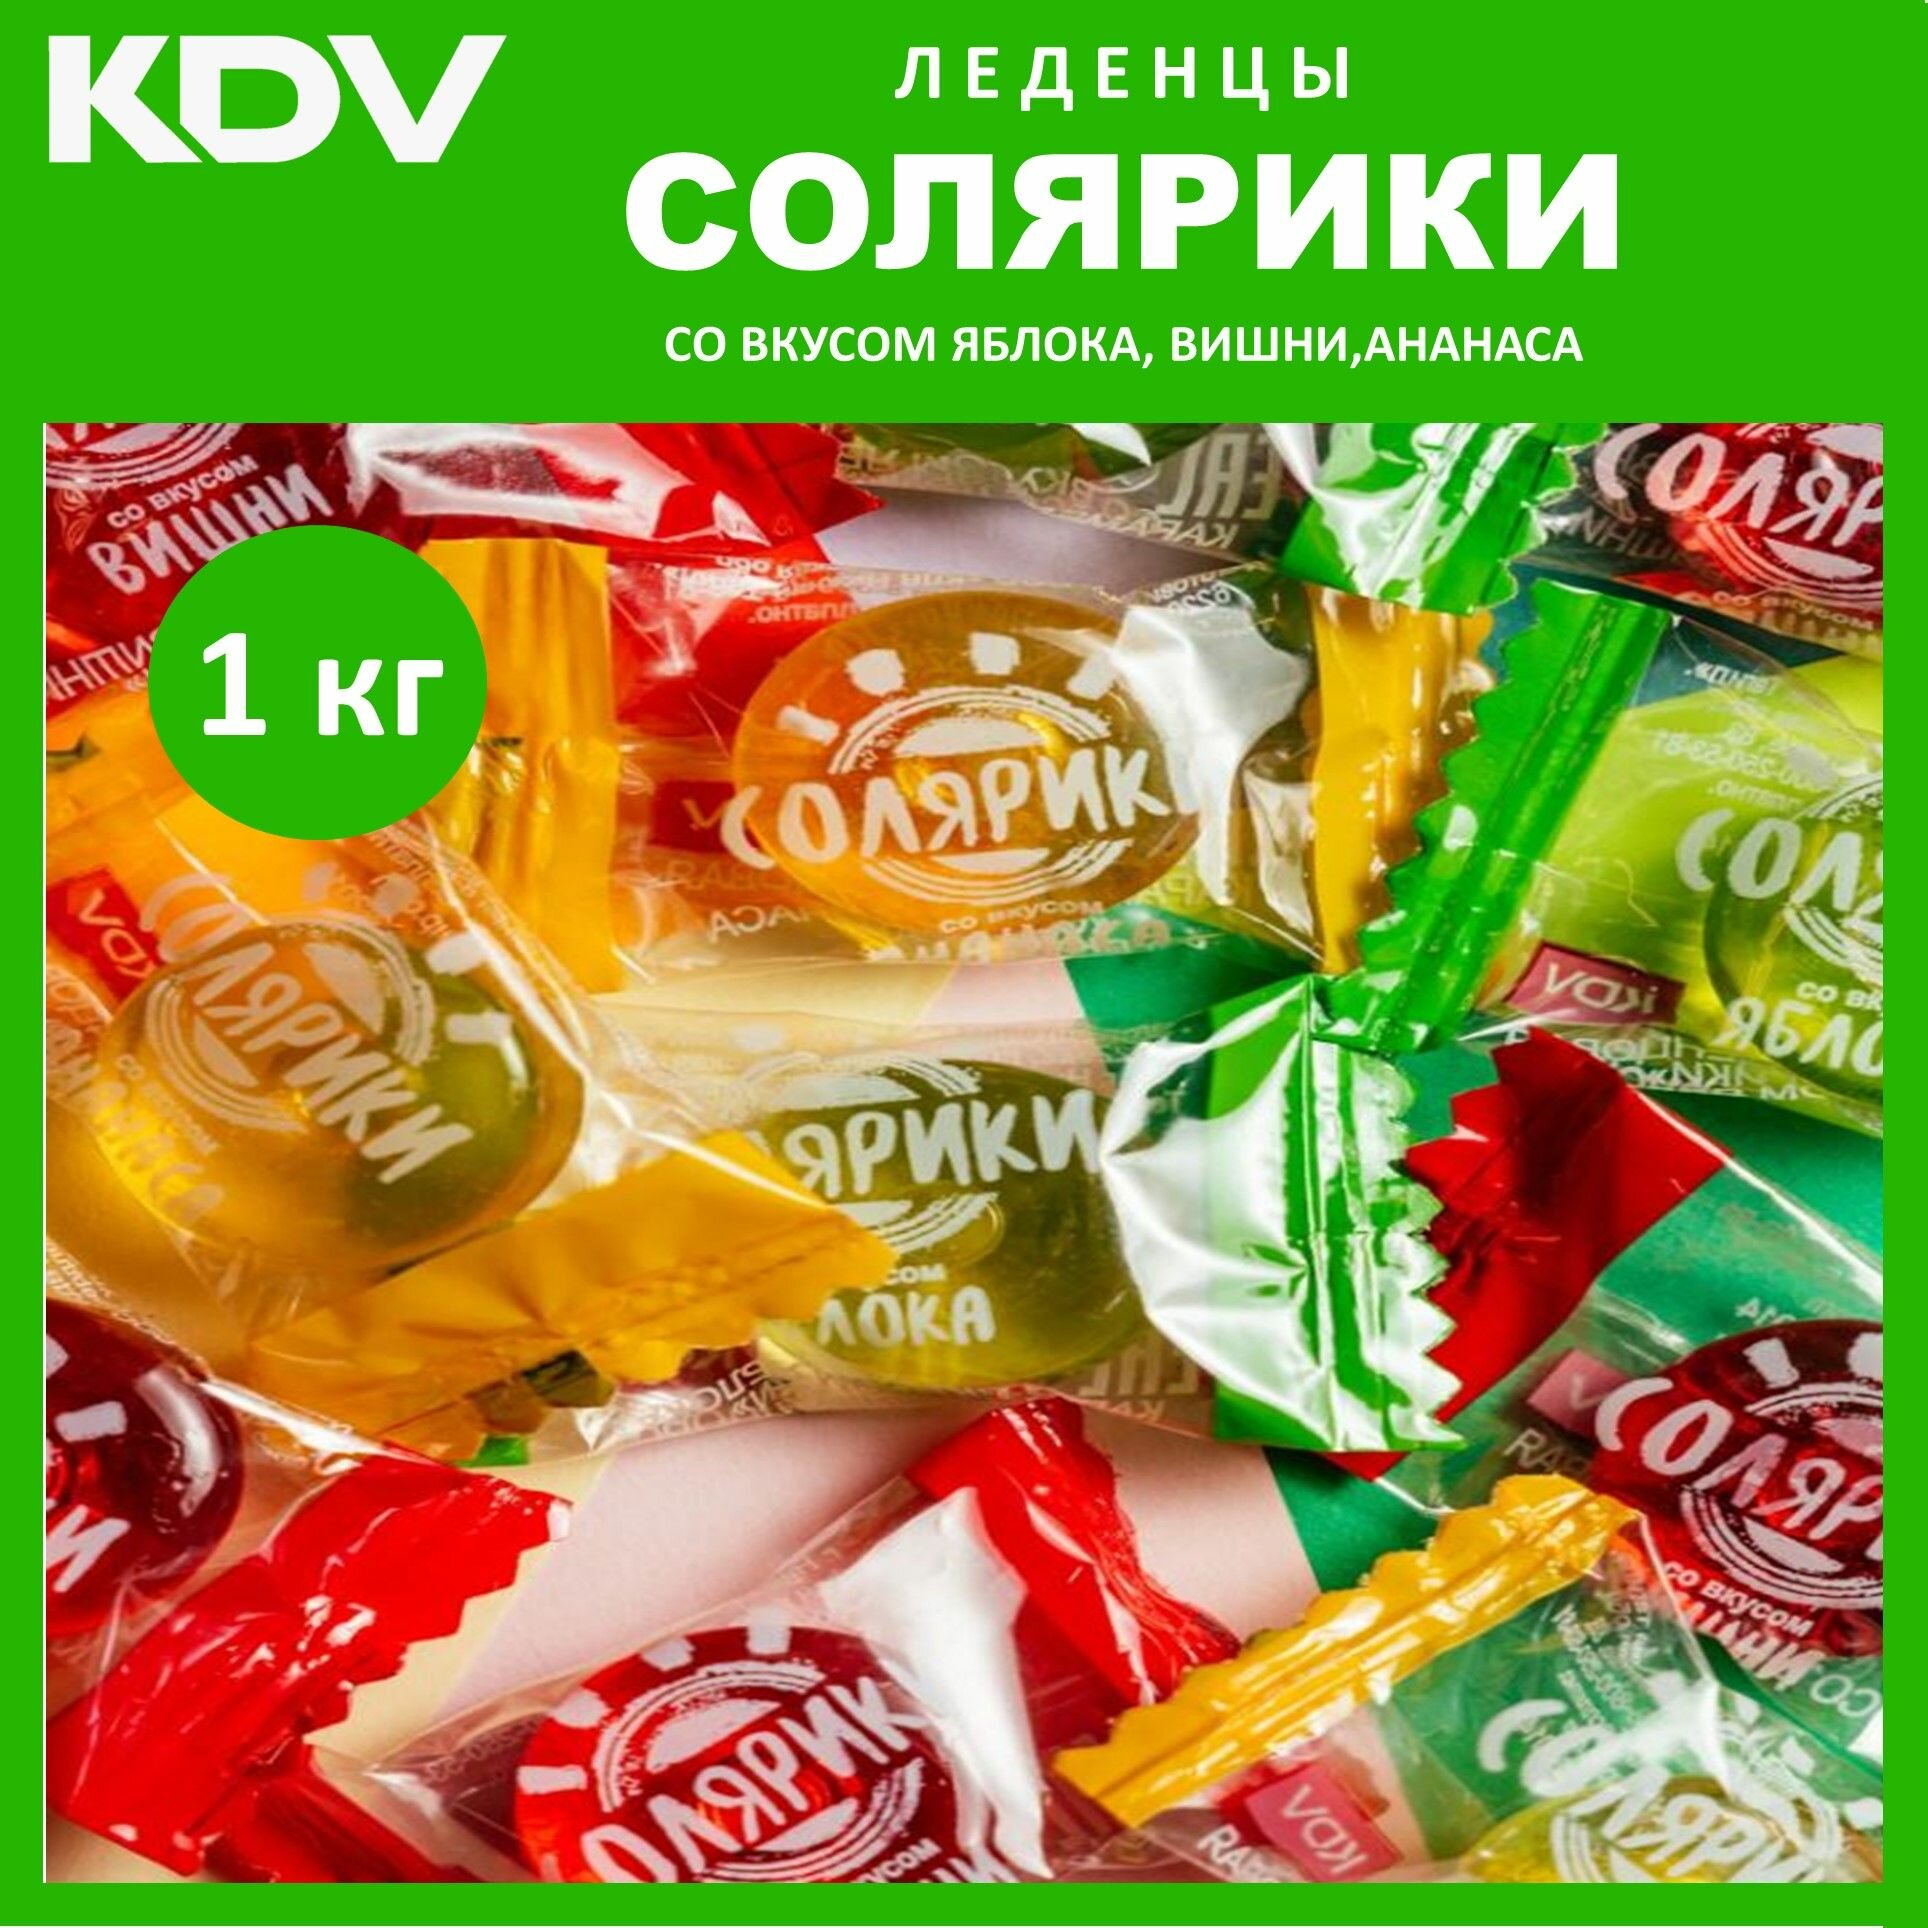 Карамель Солярики 2 шт * 500 г леденцы со вкусом яблока, ананаса и вишни/КДВ/Россия